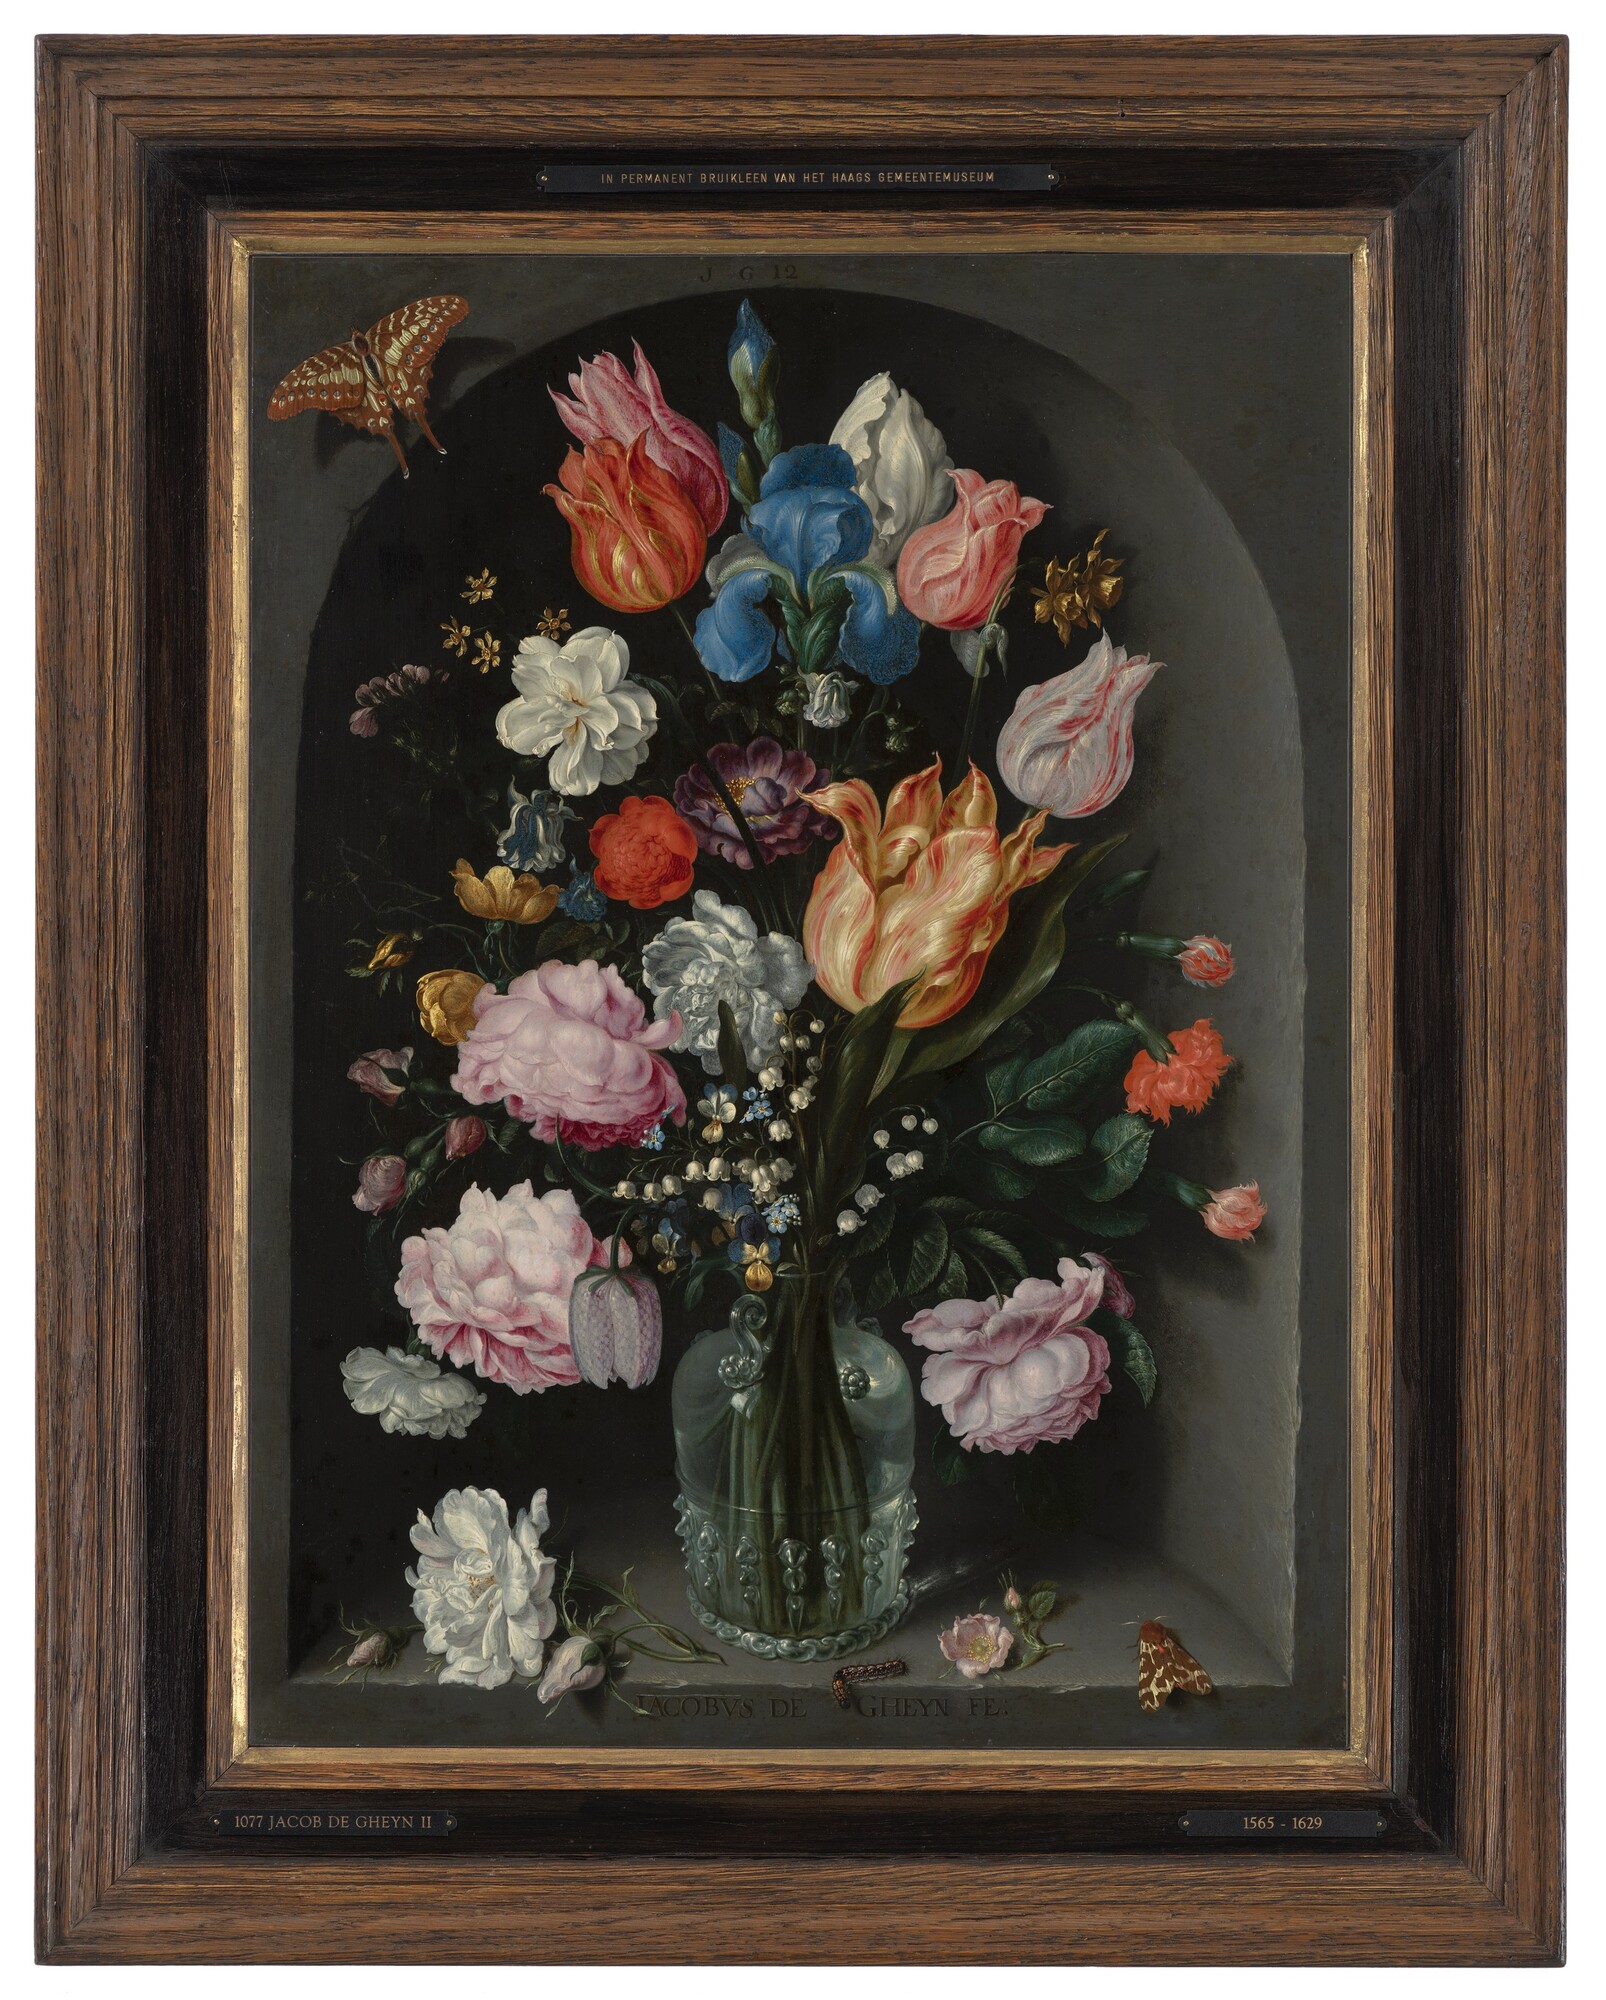 Bloemen in een glazen fles - Jacob de Gheyn II, 1565 - 1629